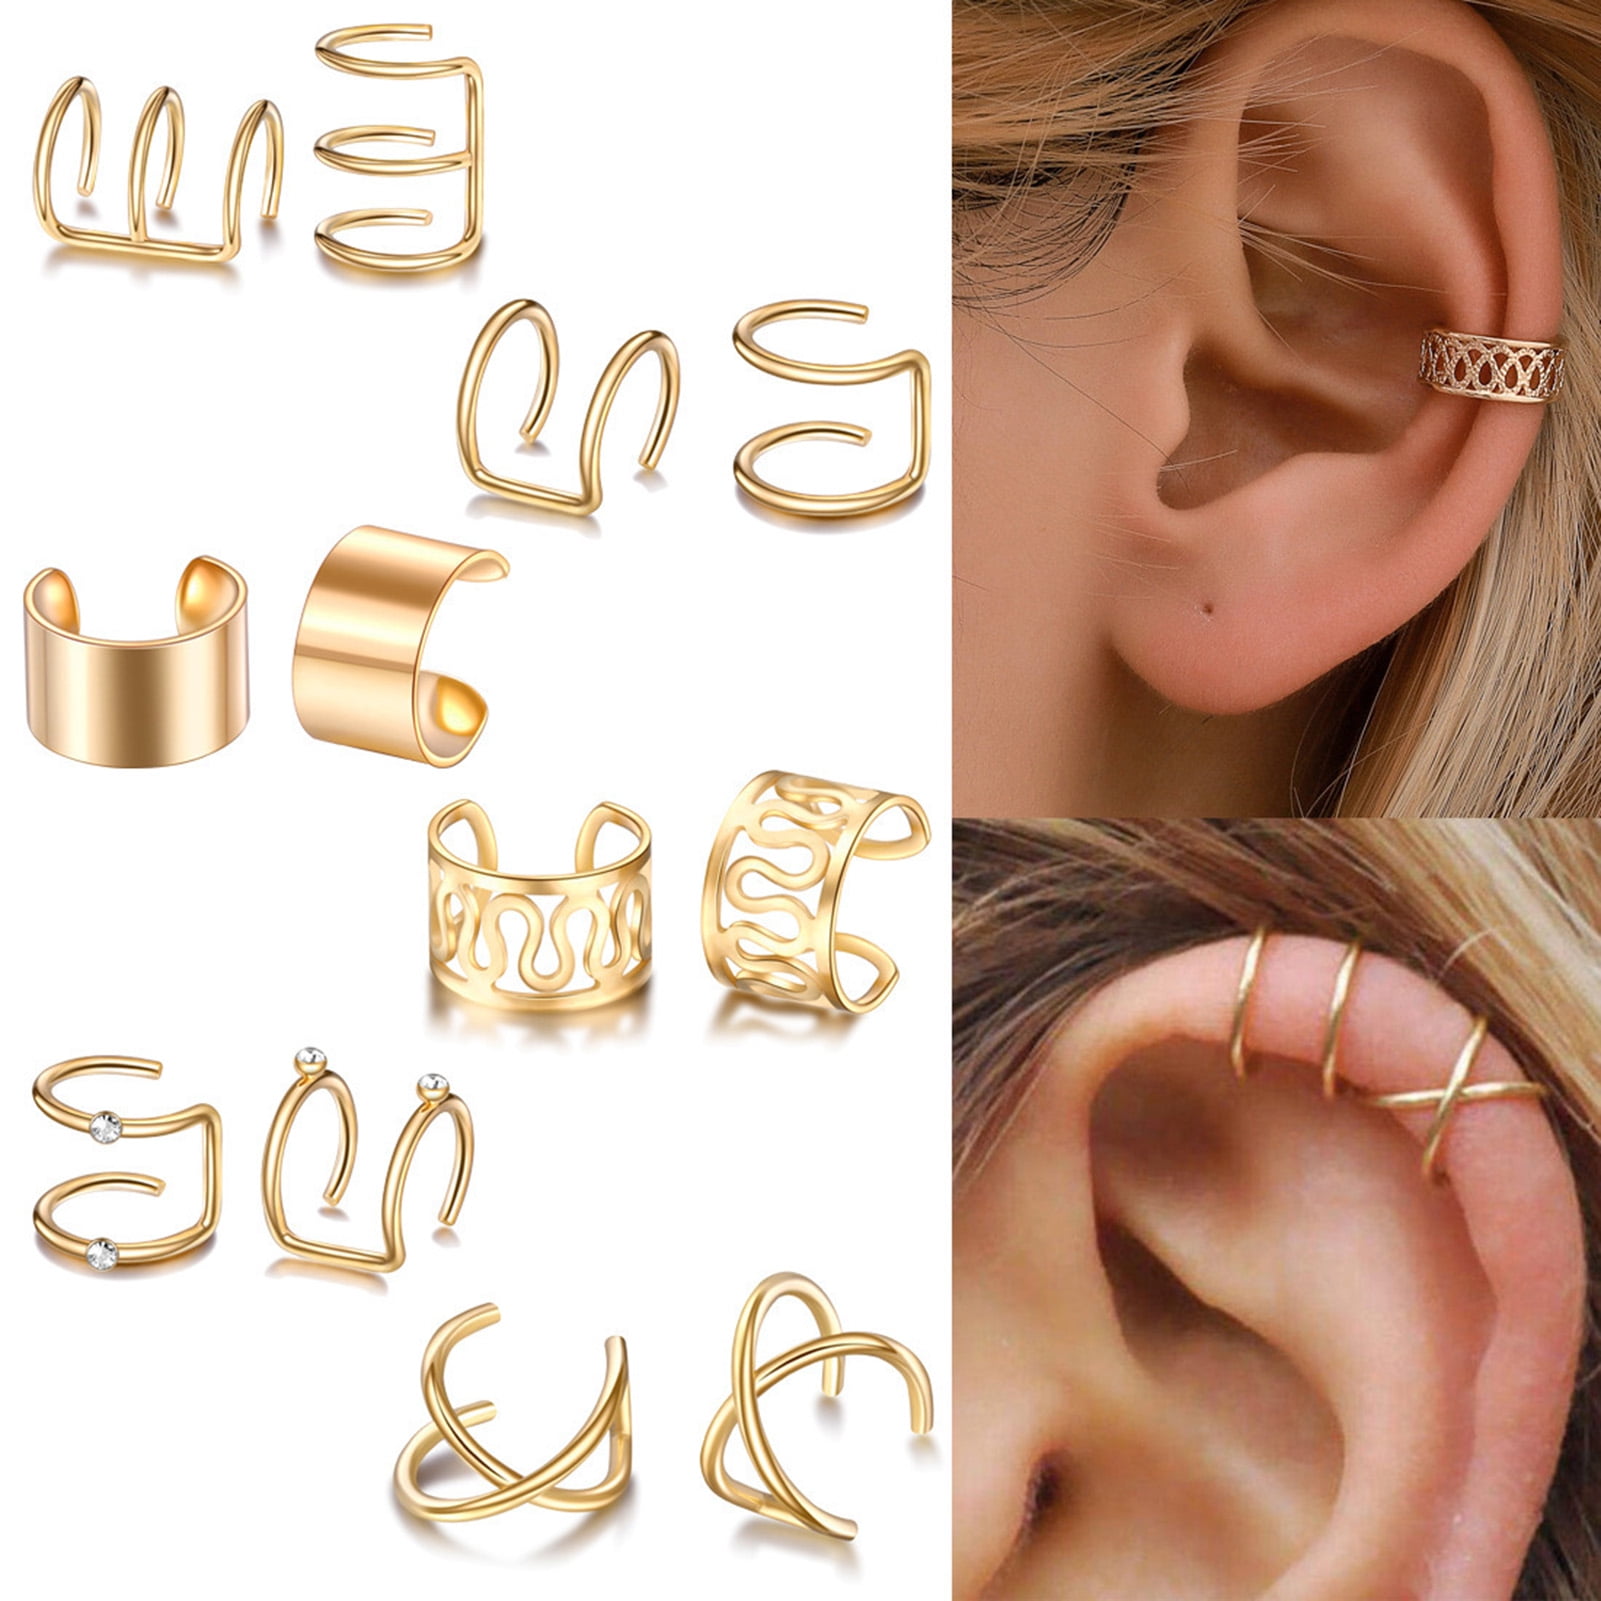 Missy Crystal Curb Chain Ear Cuff Earring Set | Pretty earrings studs, Ear  jewelry, Earings piercings